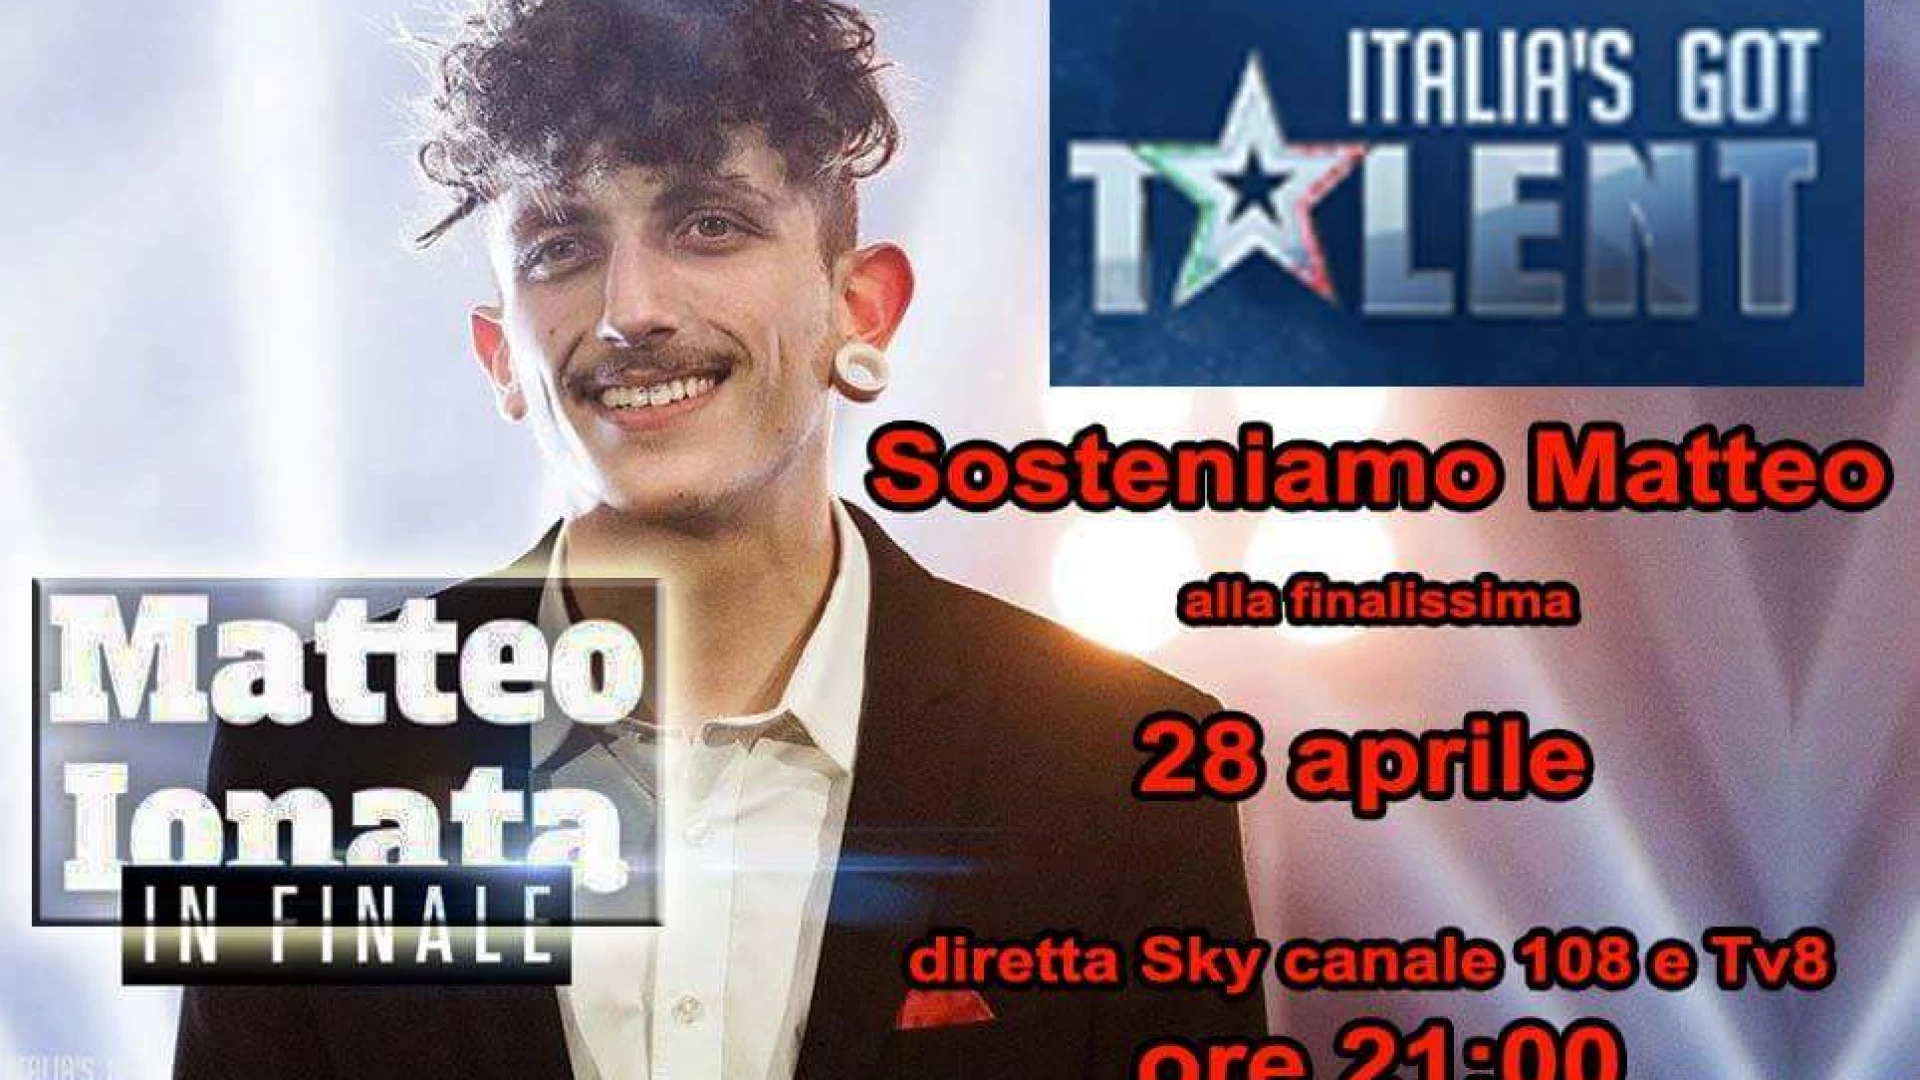 Fornelli: è il momento della finale per Matteo Ionata. Venerdì sera l’ultima puntata di Italia’s Got Talent. Ora tutto il Molise dovrà sostenerlo.